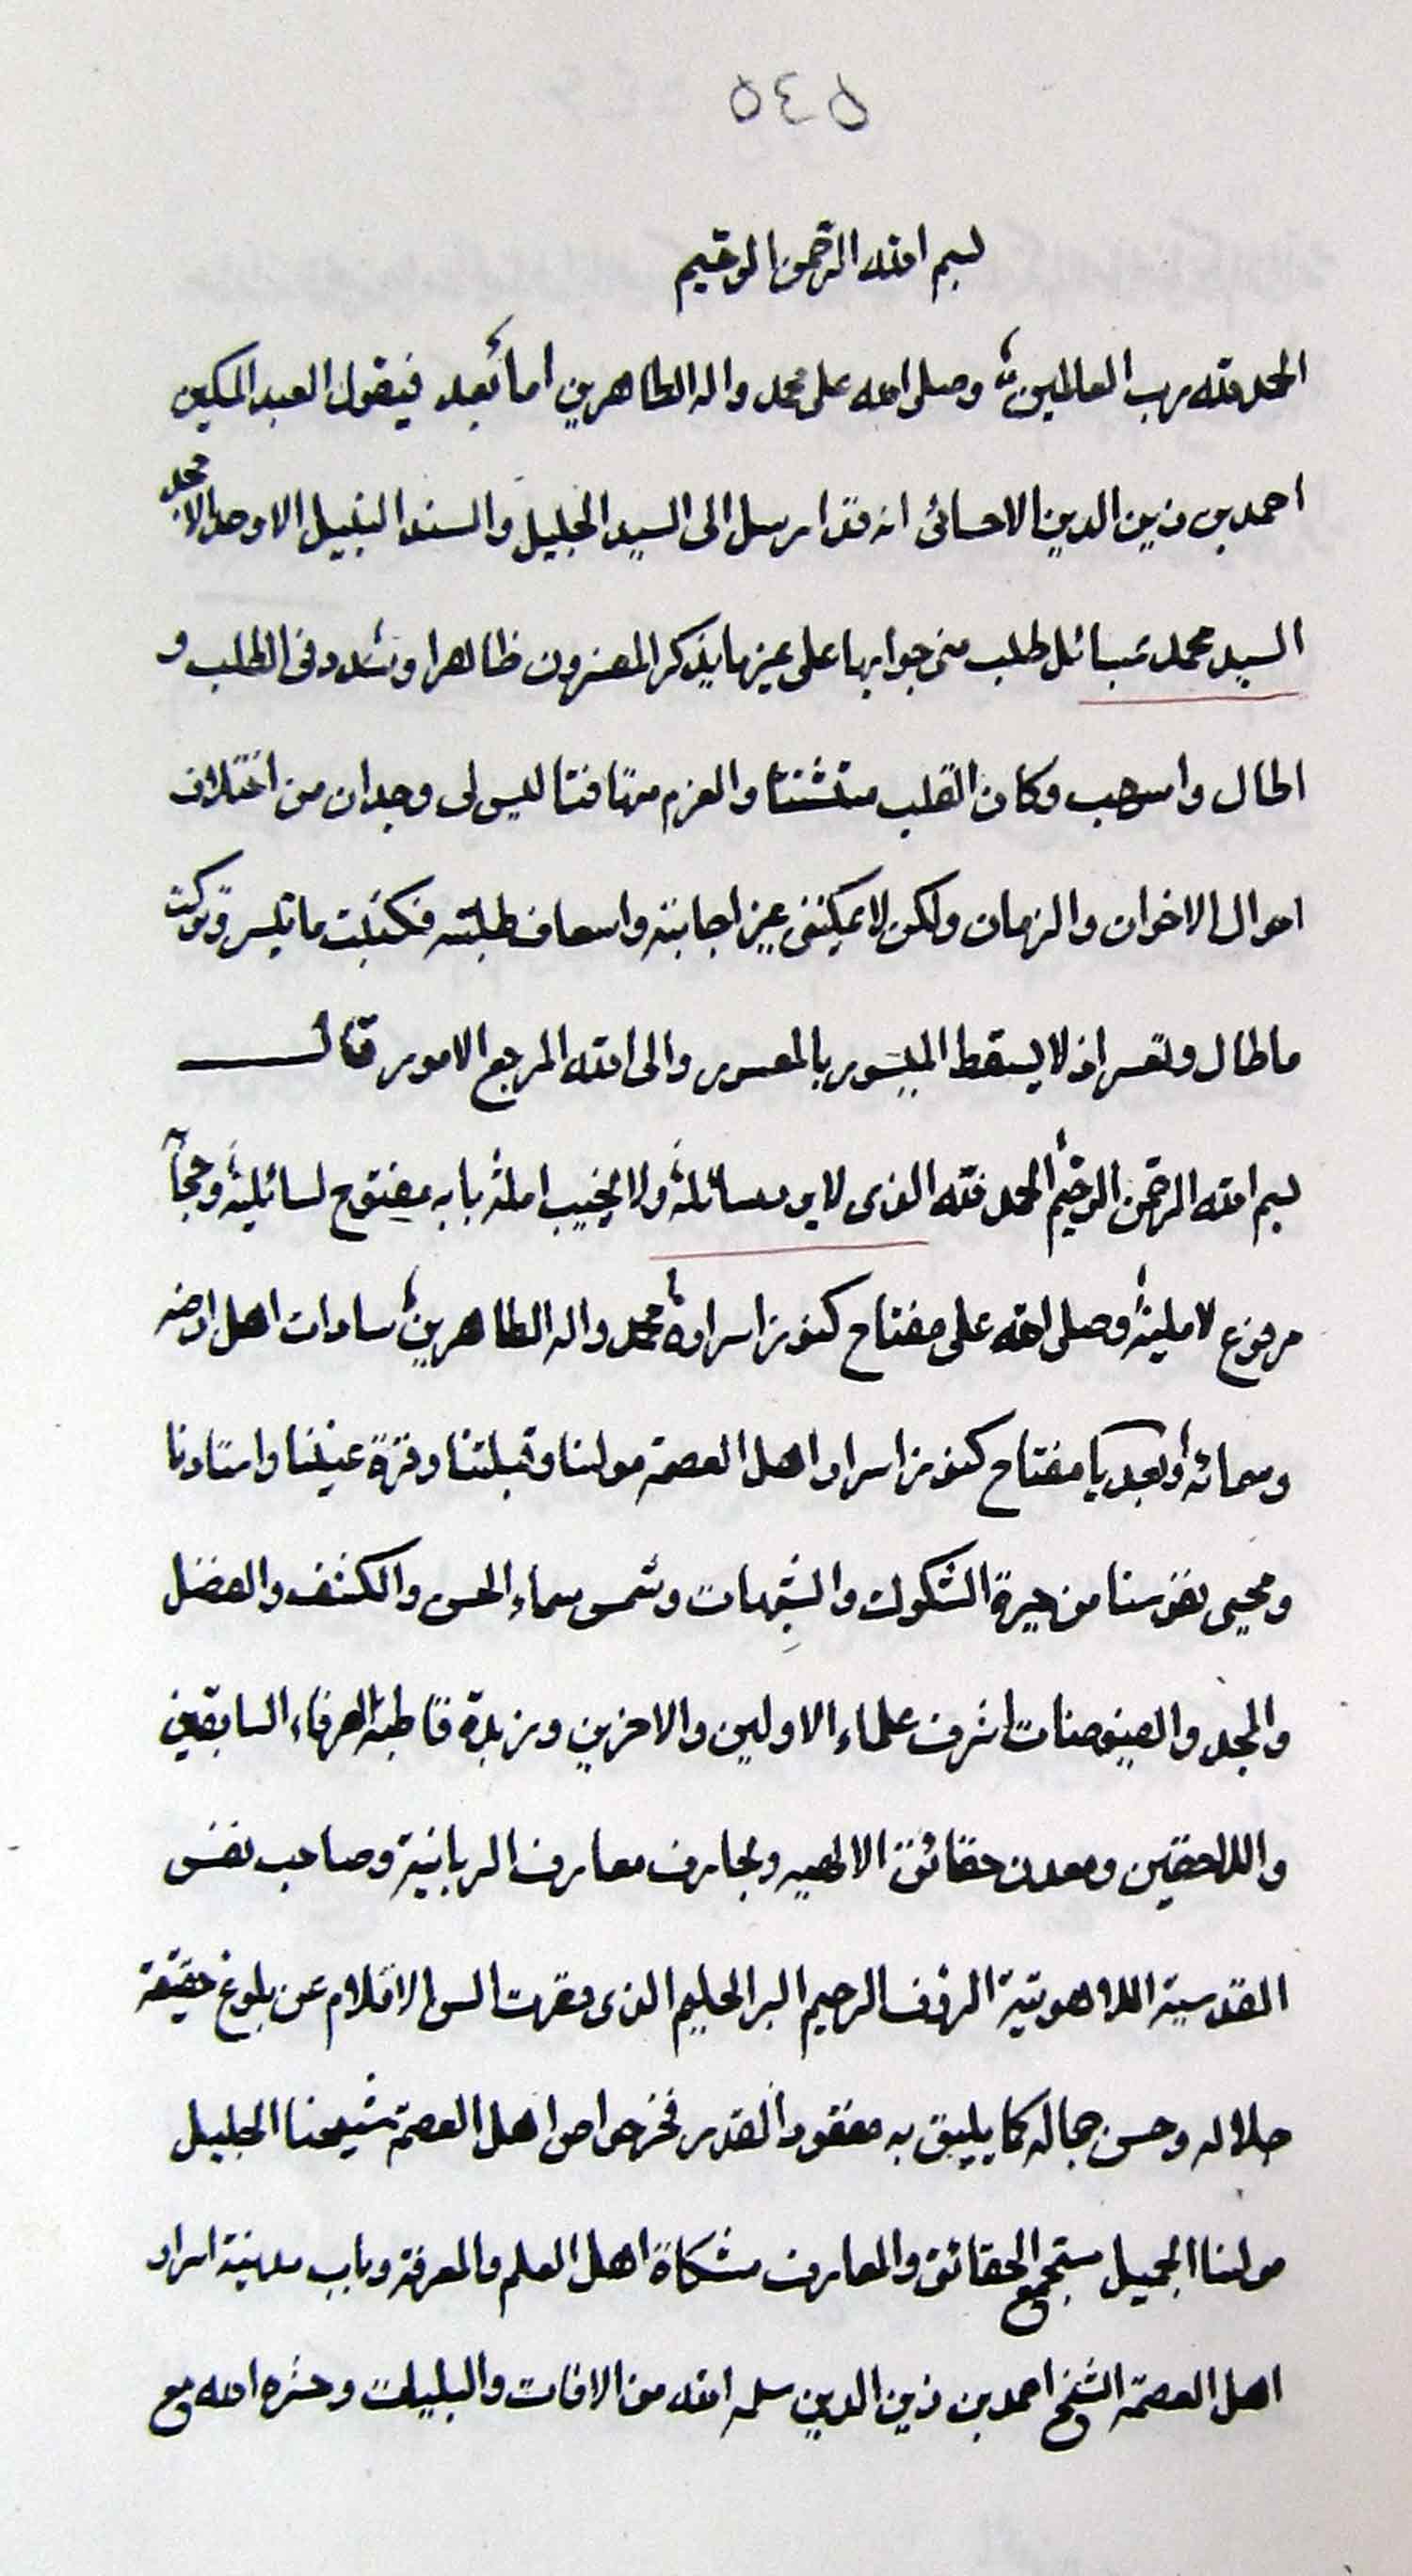 حقیقة سورة التوحید؛ جواب السید محمد؛ تفسیر سورة التوحید